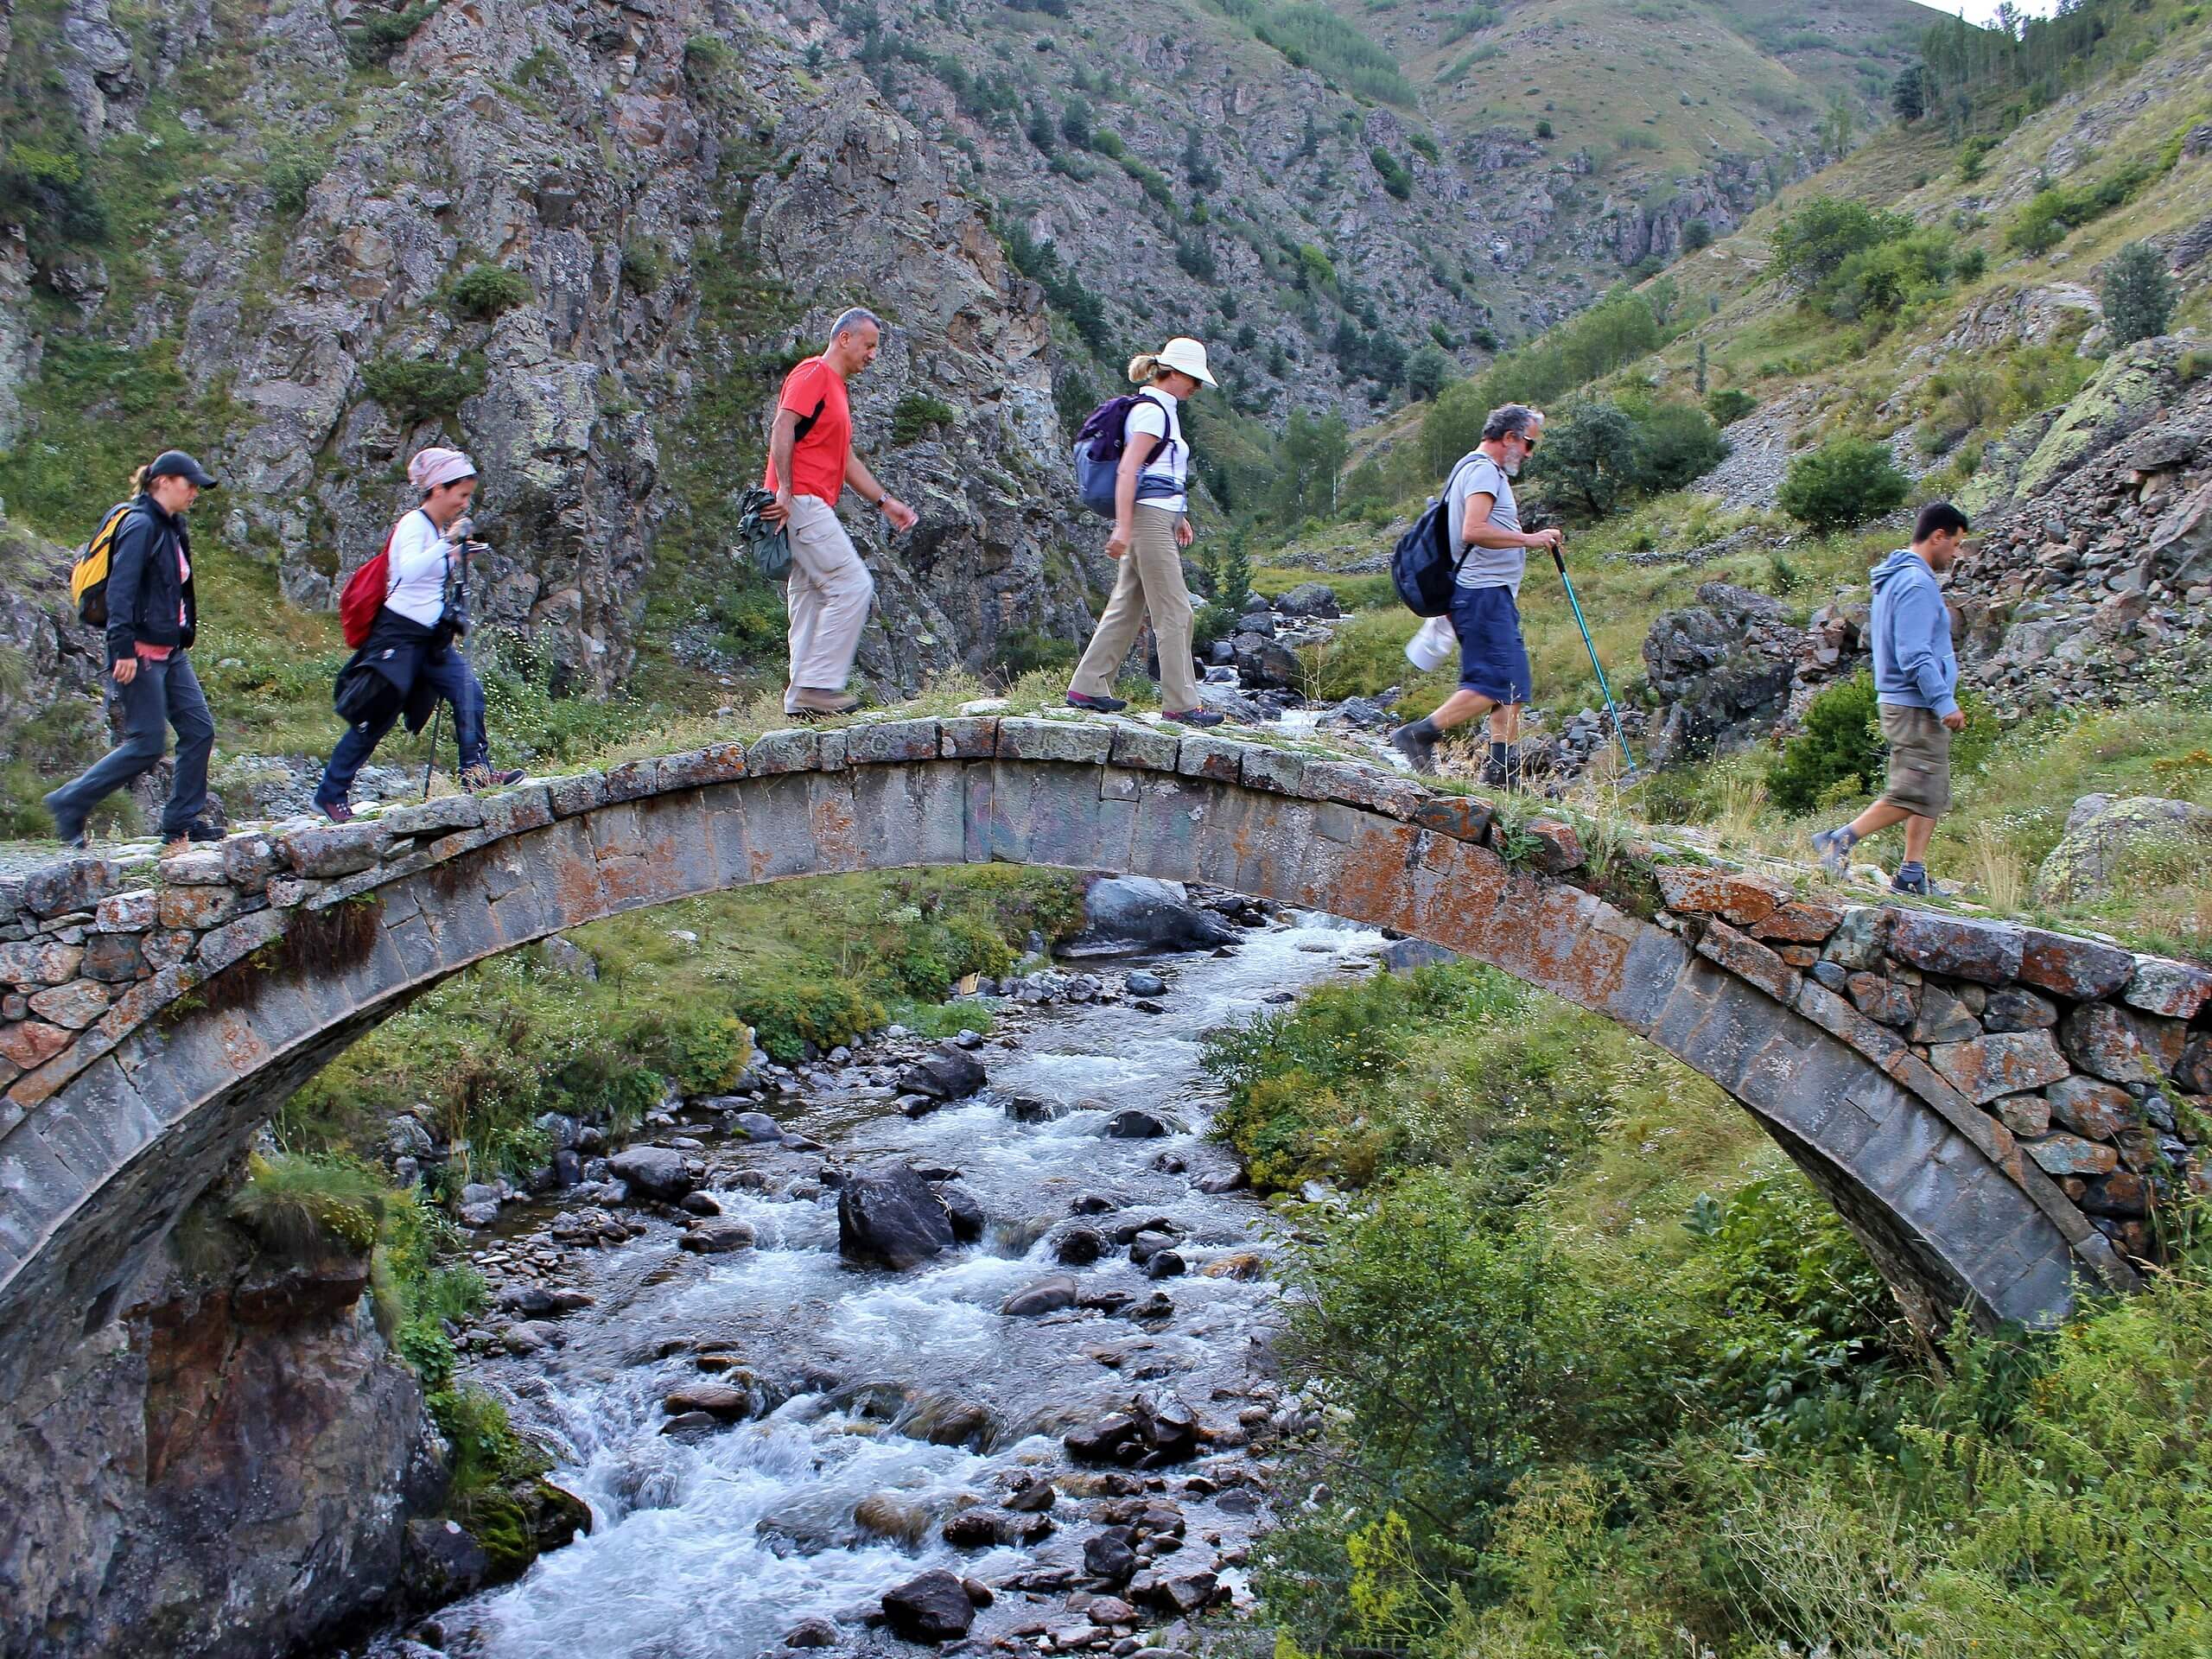 Group of trekkers crossing the creek via rock bridge in Turkey